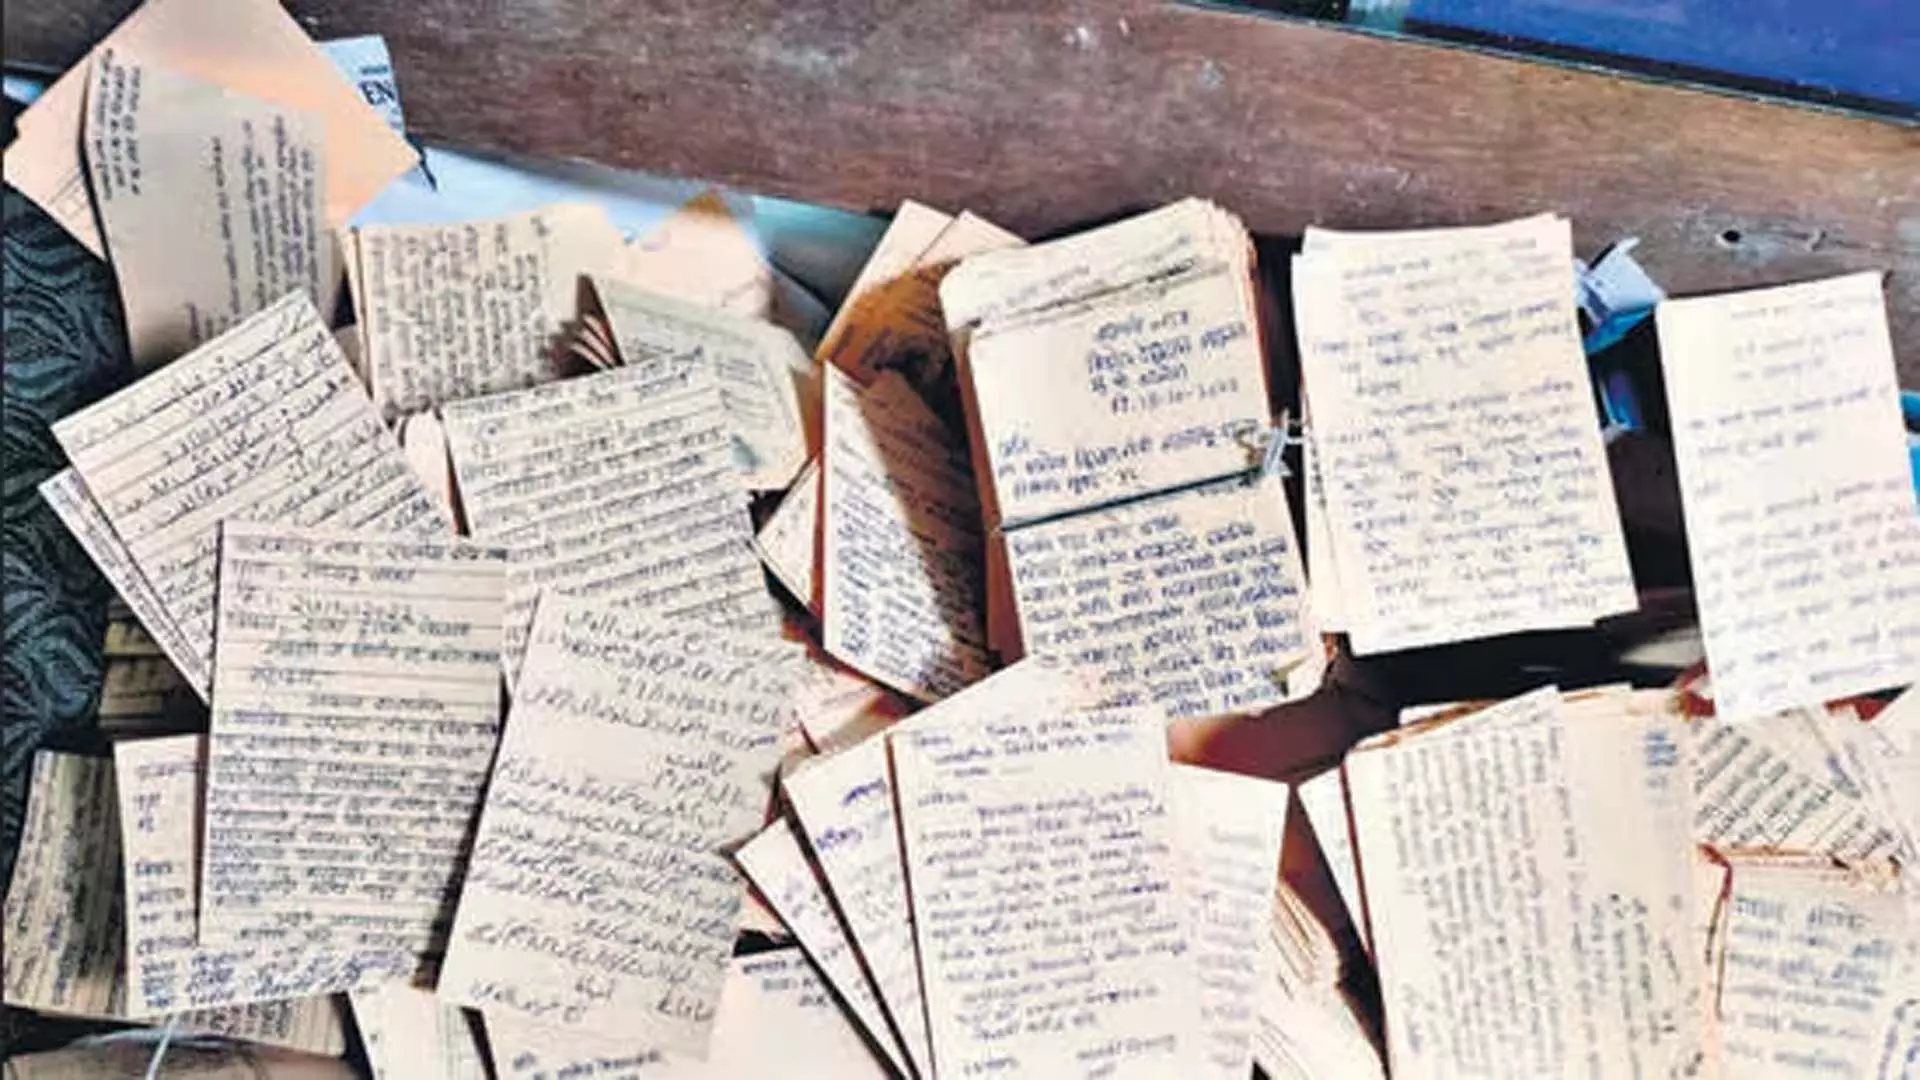 शिक्षा विभाग ने स्कूल गोद लेने योजना का विरोध करने वाले हजारों पत्रों को रद्दी कर दिया